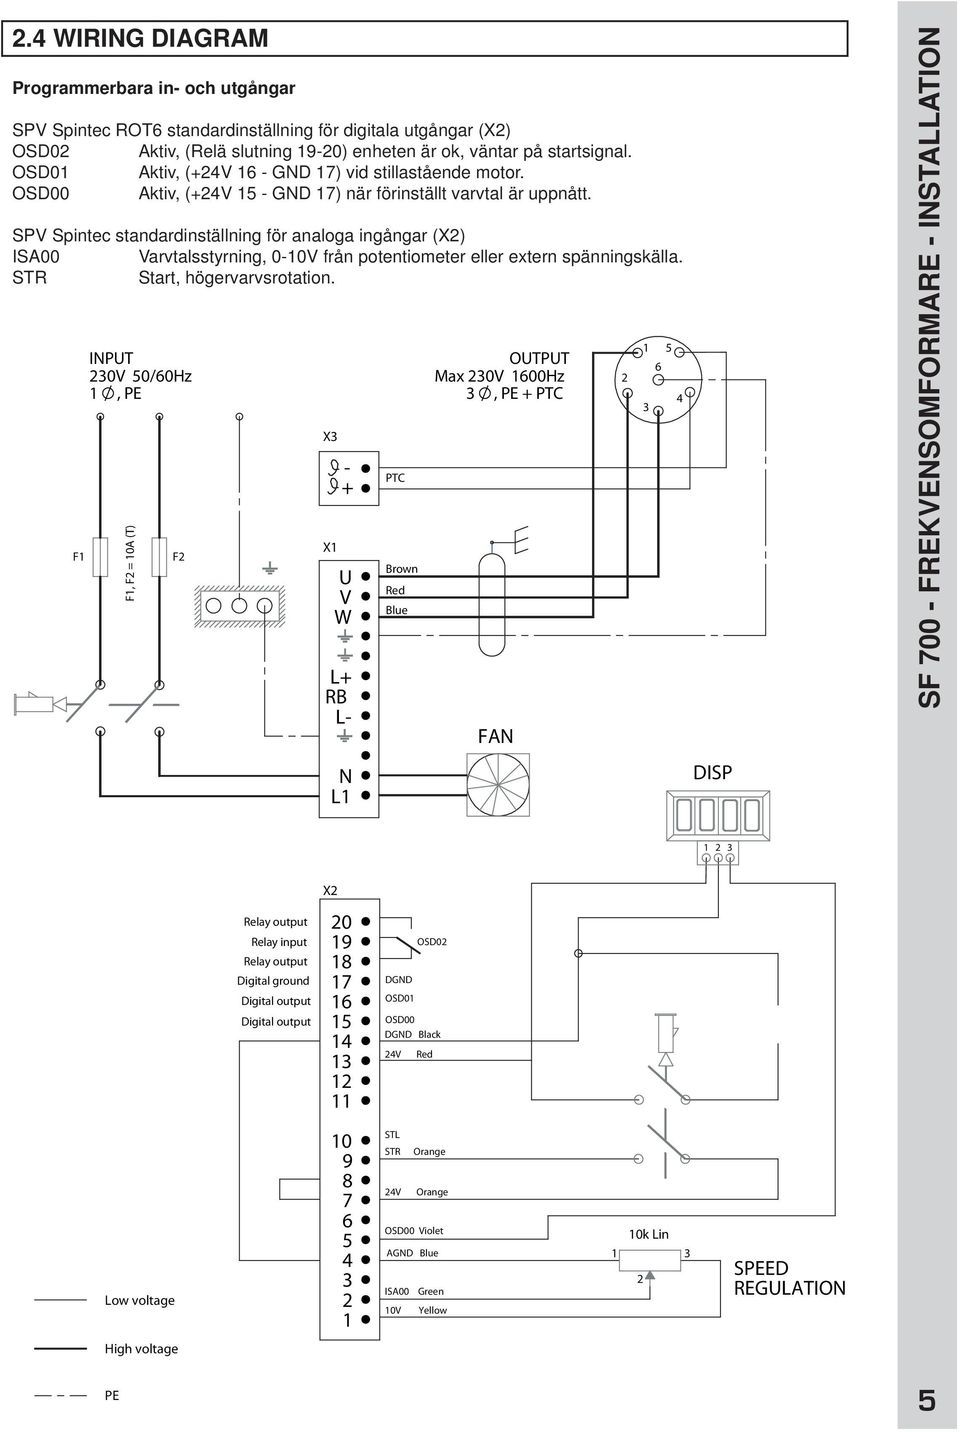 SPV Spintec standardinställning för analoga ingångar (X2) ISA00 Varvtalsstyrning, 0-10V från potentiometer eller extern spänningskälla. STR Start, högervarvsrotation.